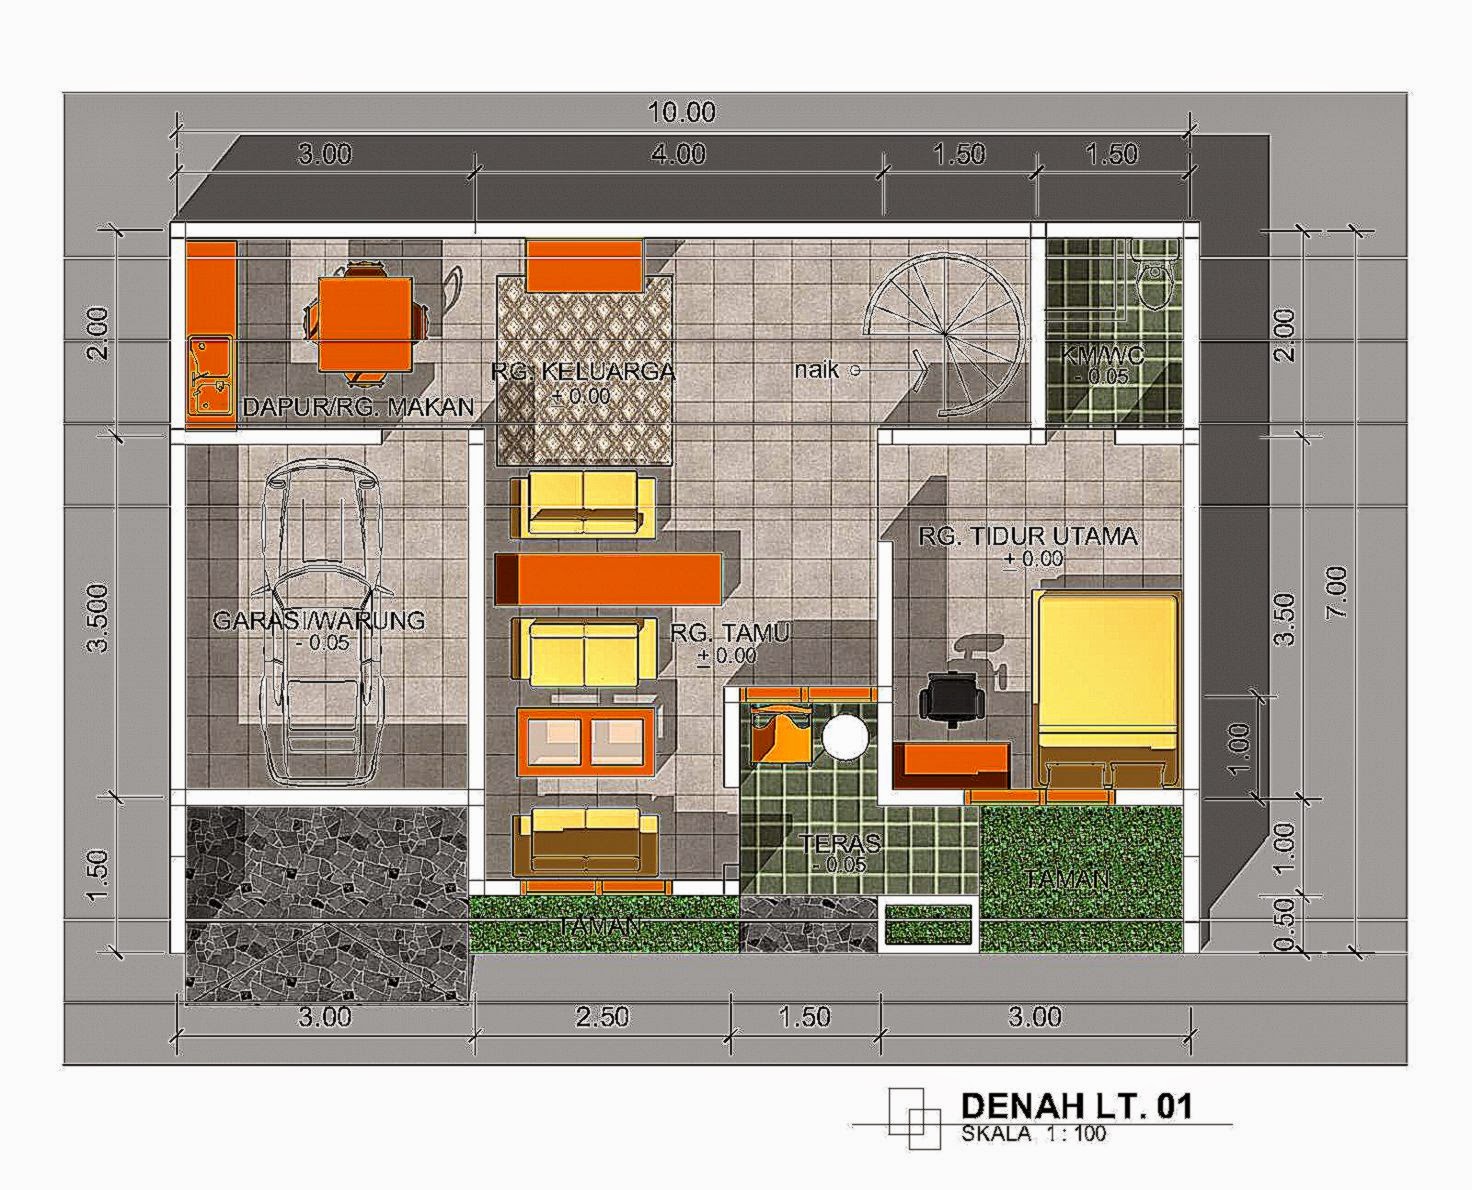 64 Desain Rumah Minimalis Ukuran 9x15 Desain Rumah Minimalis Terbaru